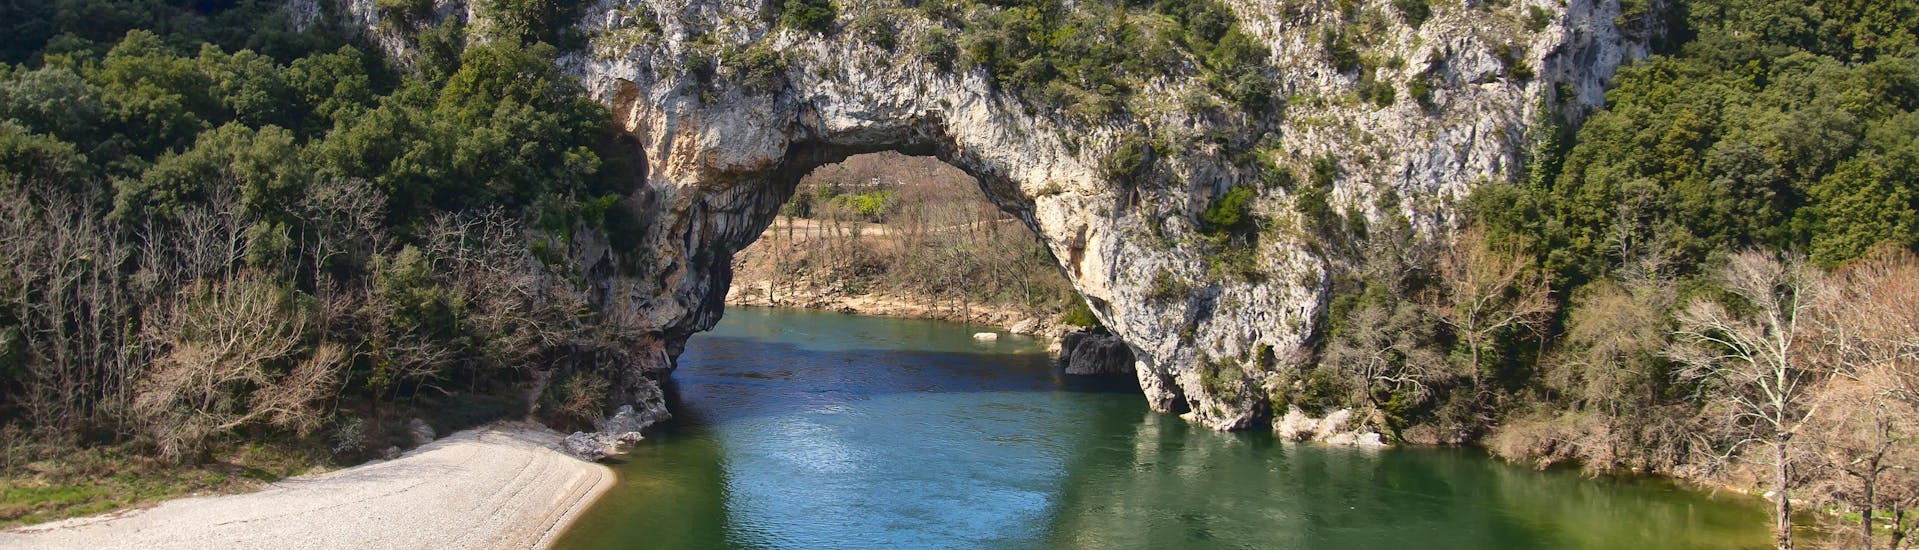 Une vue de la célèbre arche rocheuse qui peut être admirée par ceux qui font du canyoning à Vallon-Pont-d'Arc.